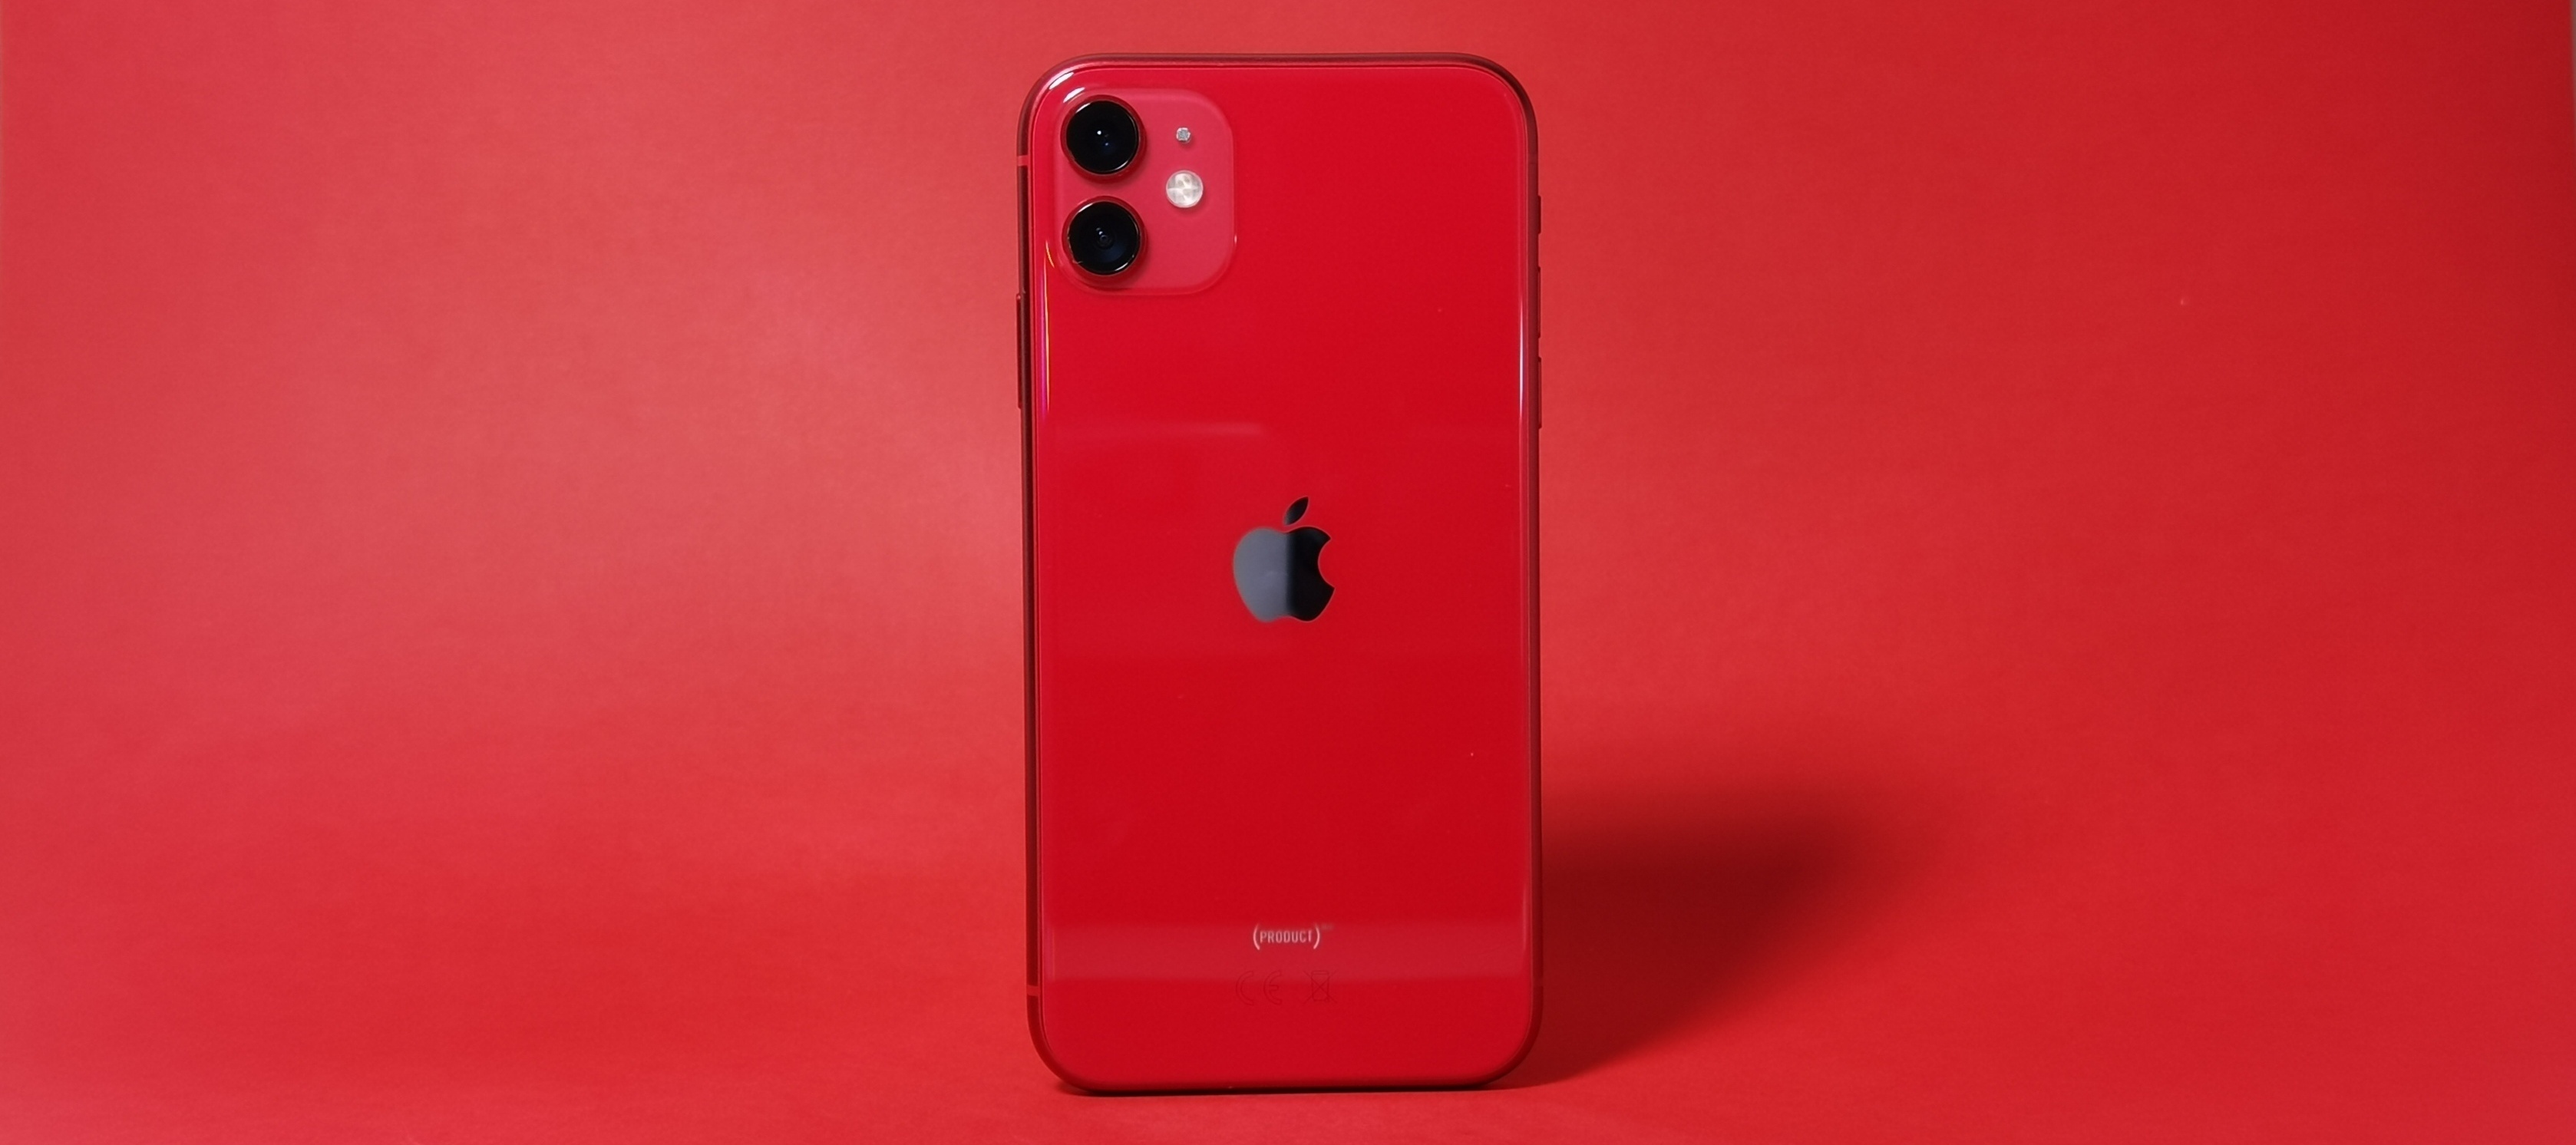 Super, aber nicht kaufen: Apple iPhone 11 - Mein Erfahrungsbericht